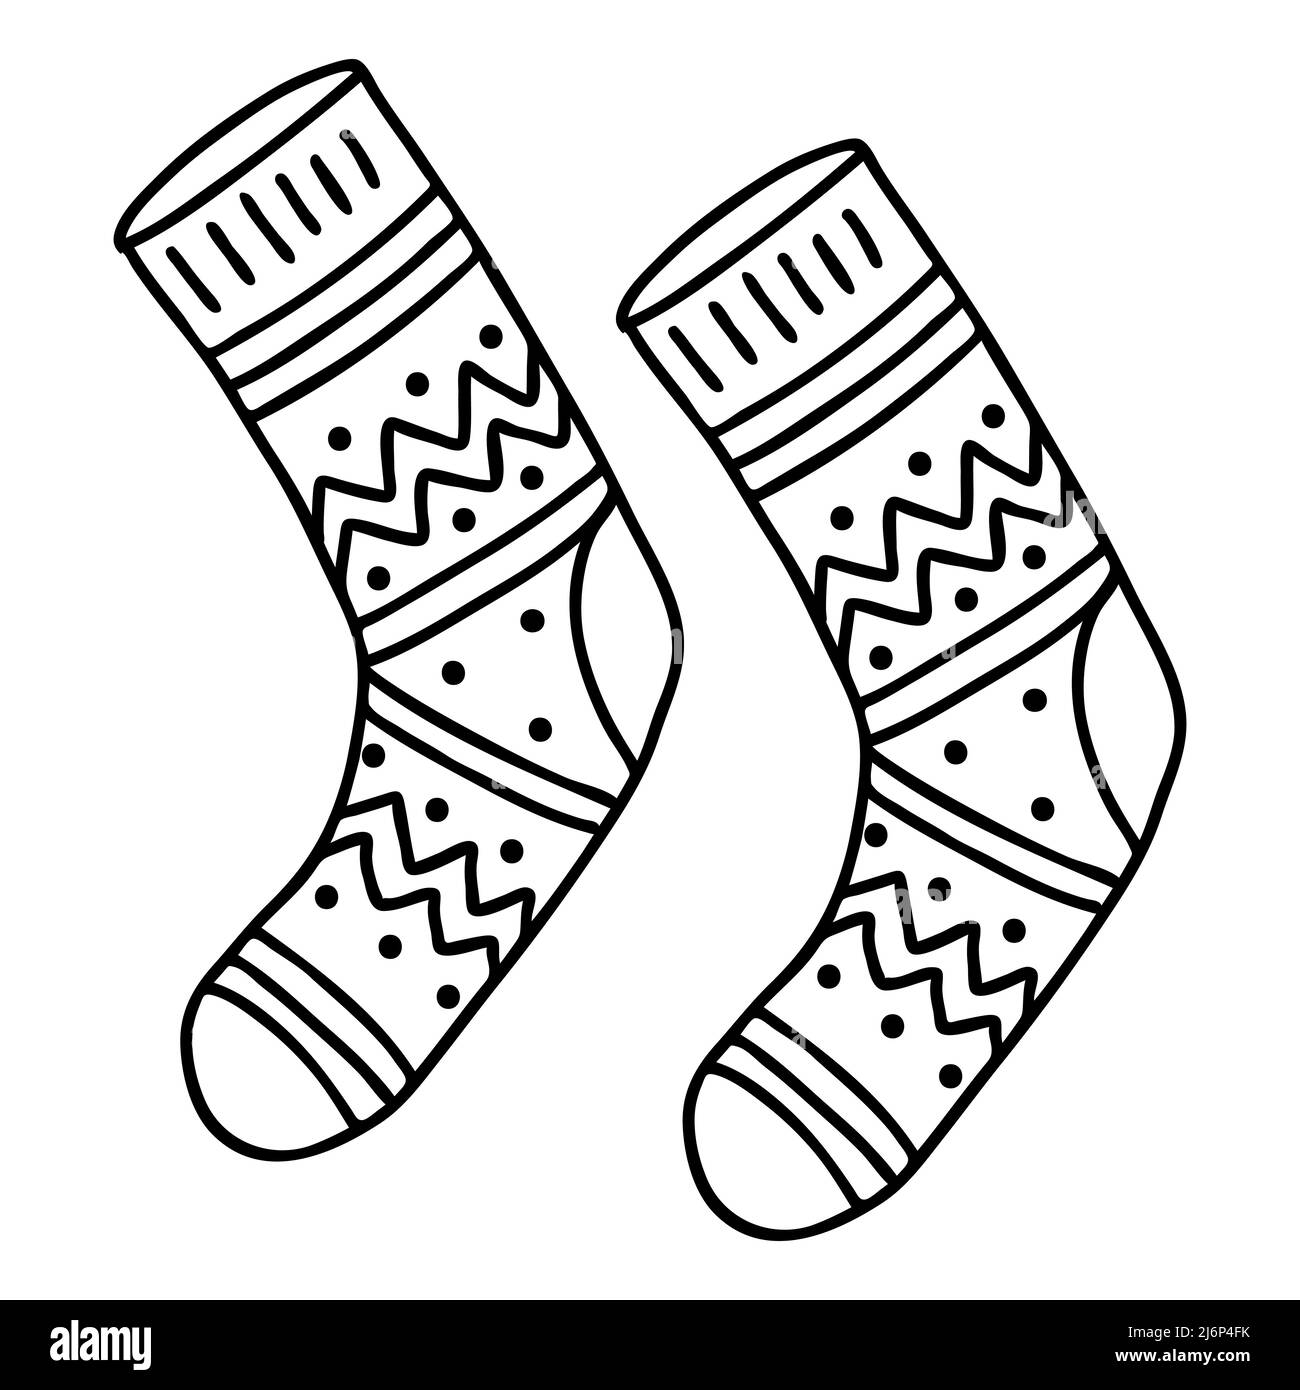 Socks vectors Banque d'images noir et blanc - Alamy